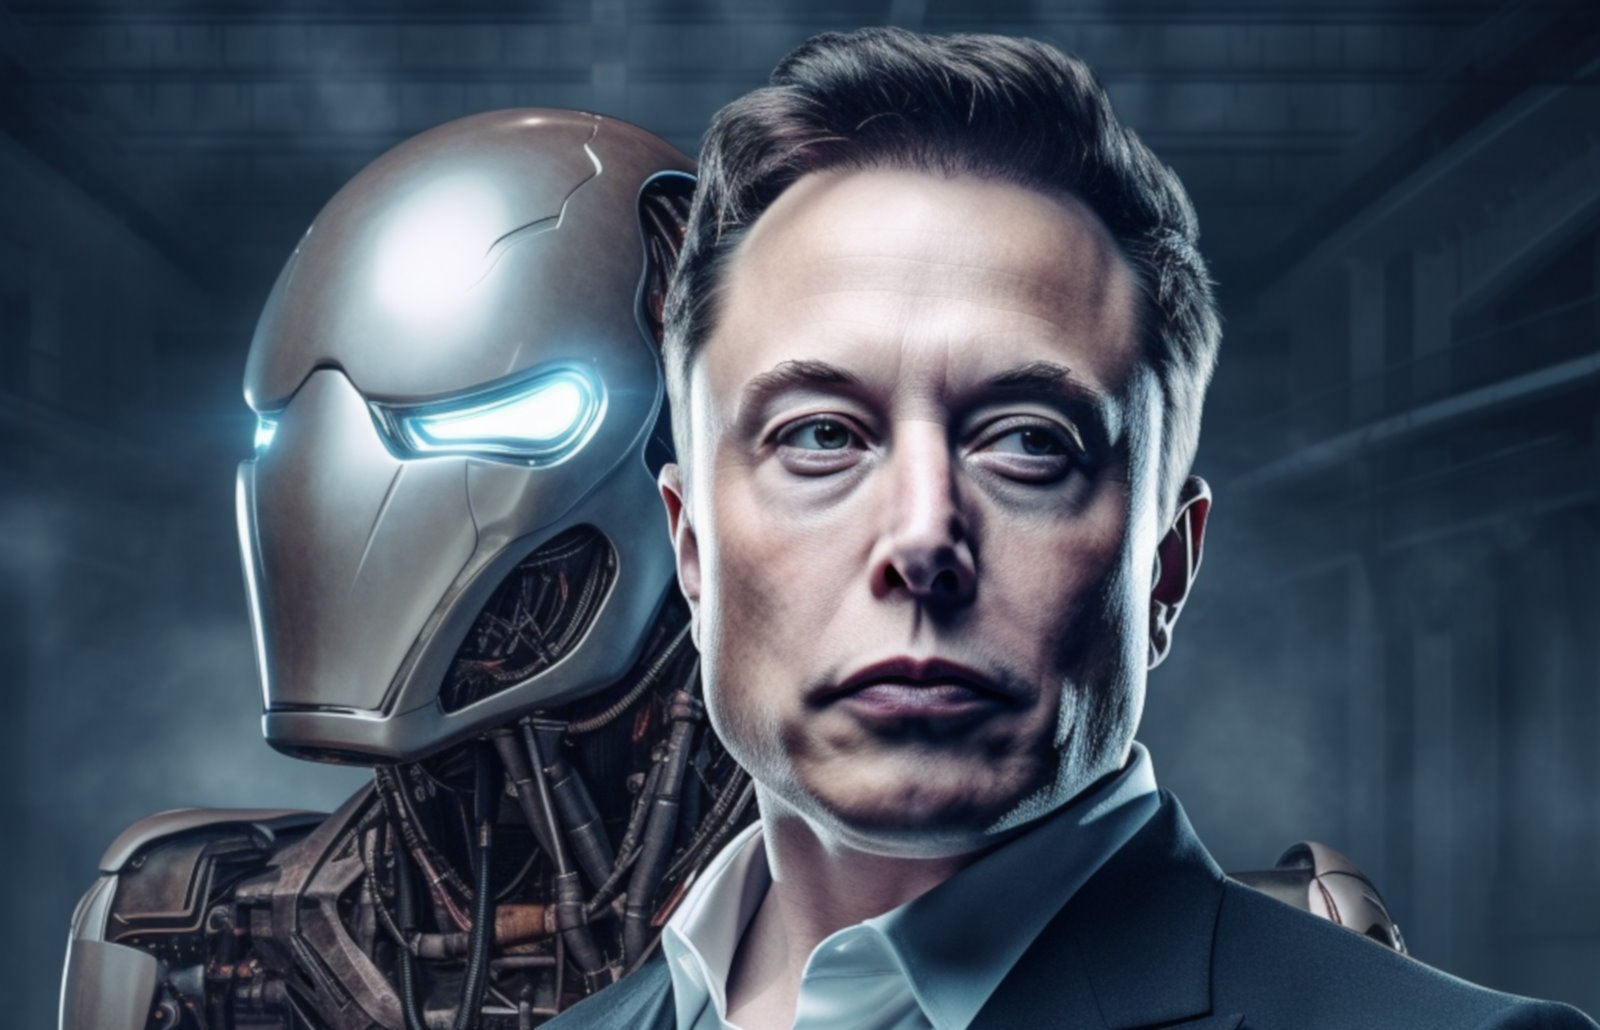 Elon Musk lance une entreprise d’intelligence artificielle pour concurrencer OpenAI. © @Mirai, illustration générée par Midjourney